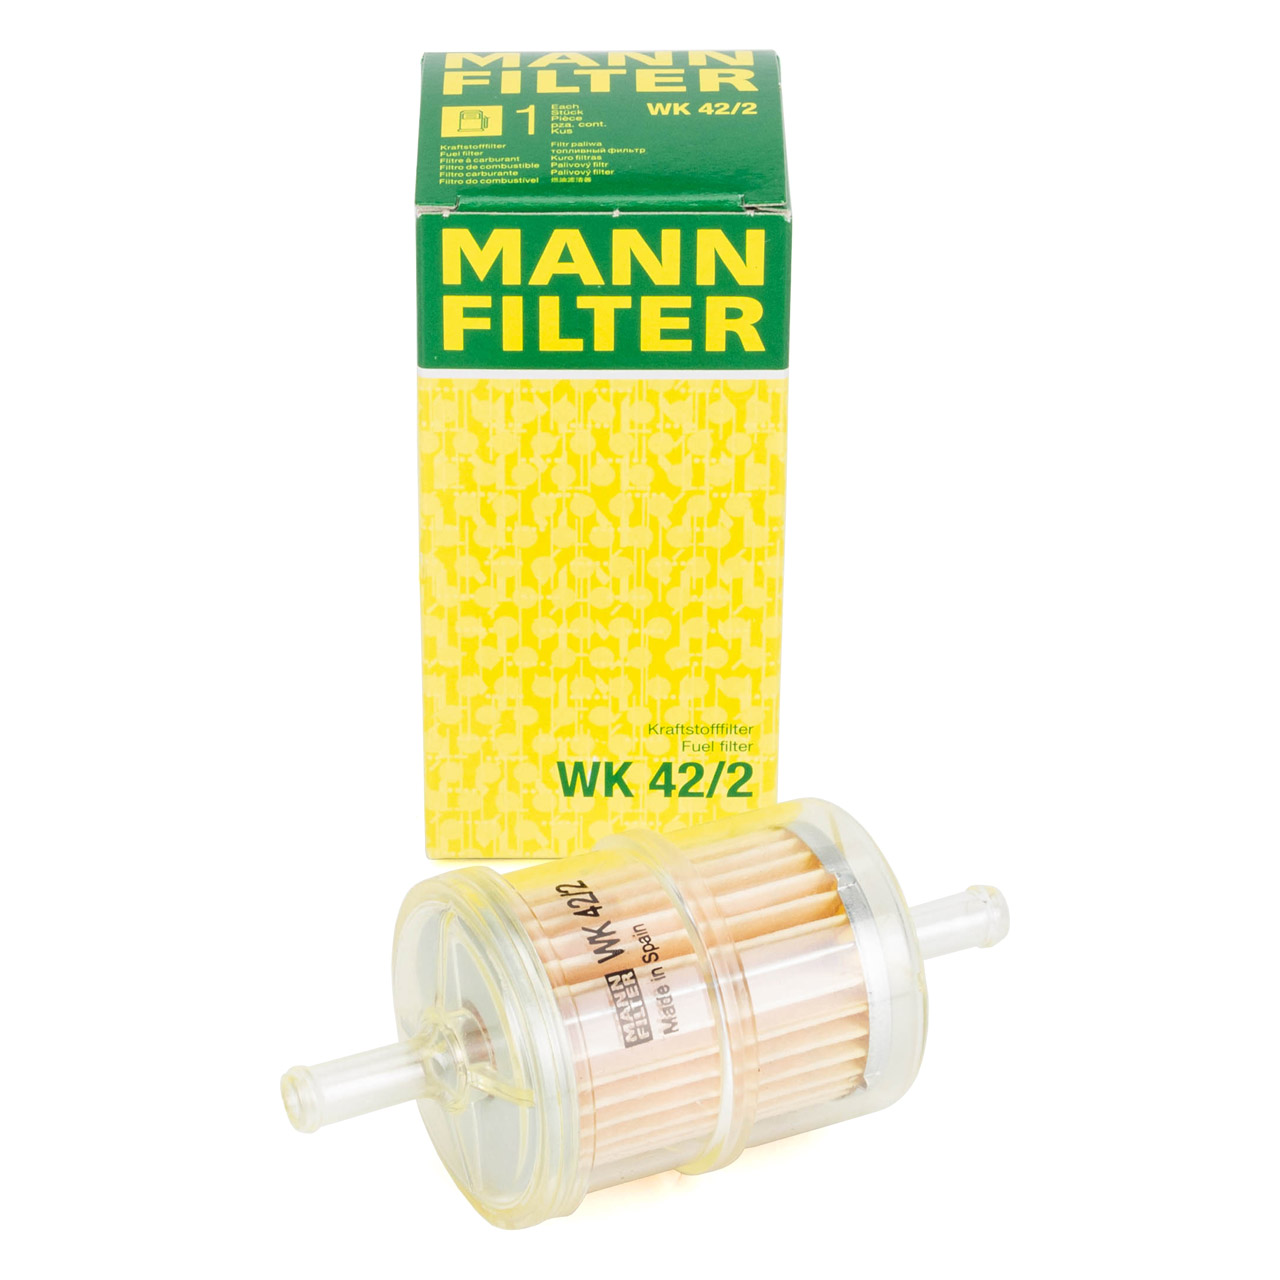 Unimog MB Trac Ölfilter - Original Mann Filter HU932.4X, 14,80 €